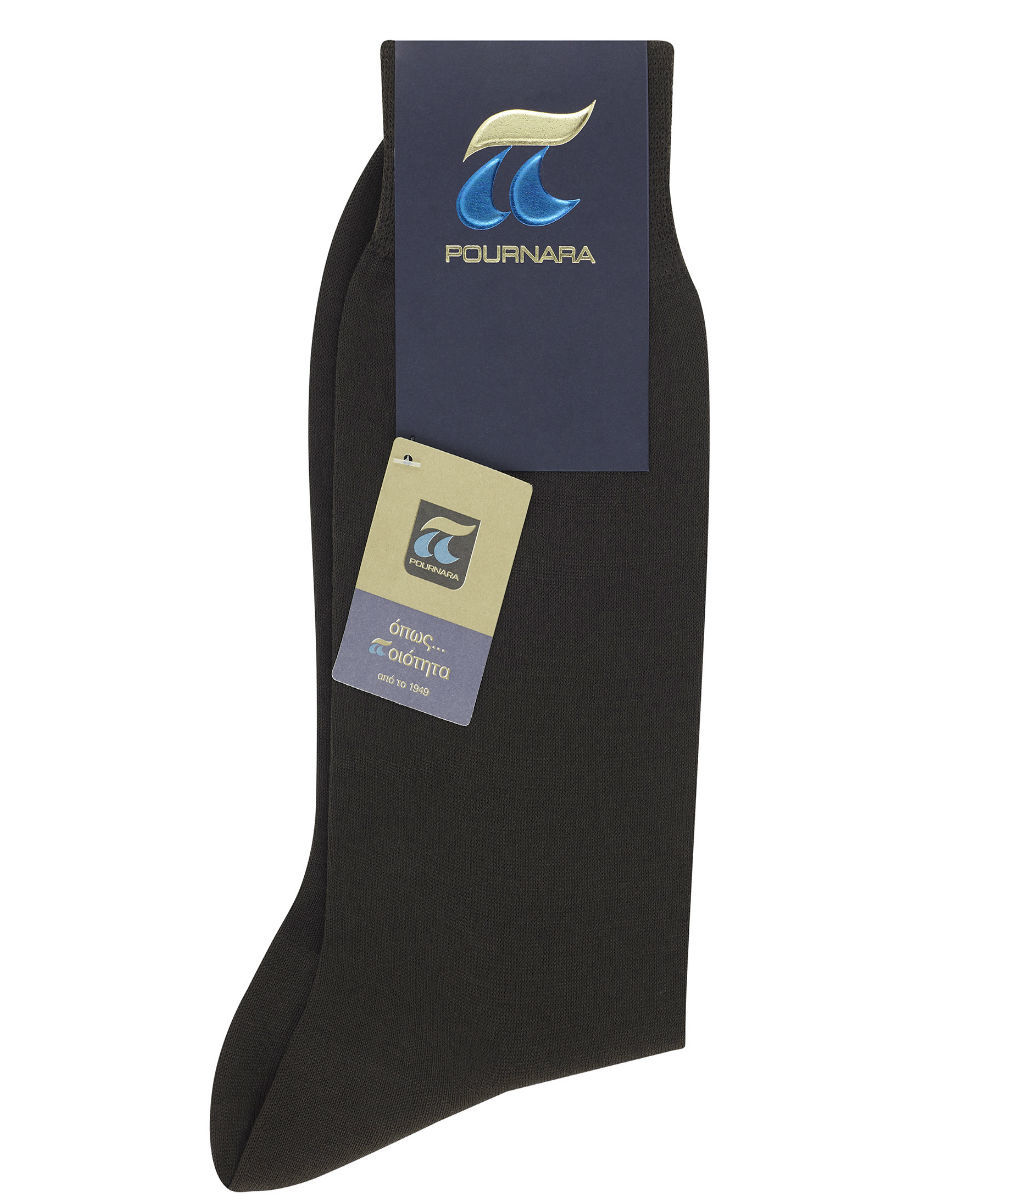 Ανδρική κάλτσα 100% Μερσεριζέ βαμβάκι Πουρνάρας σε καφέ χρώμα P110-17 P110C Καφέ